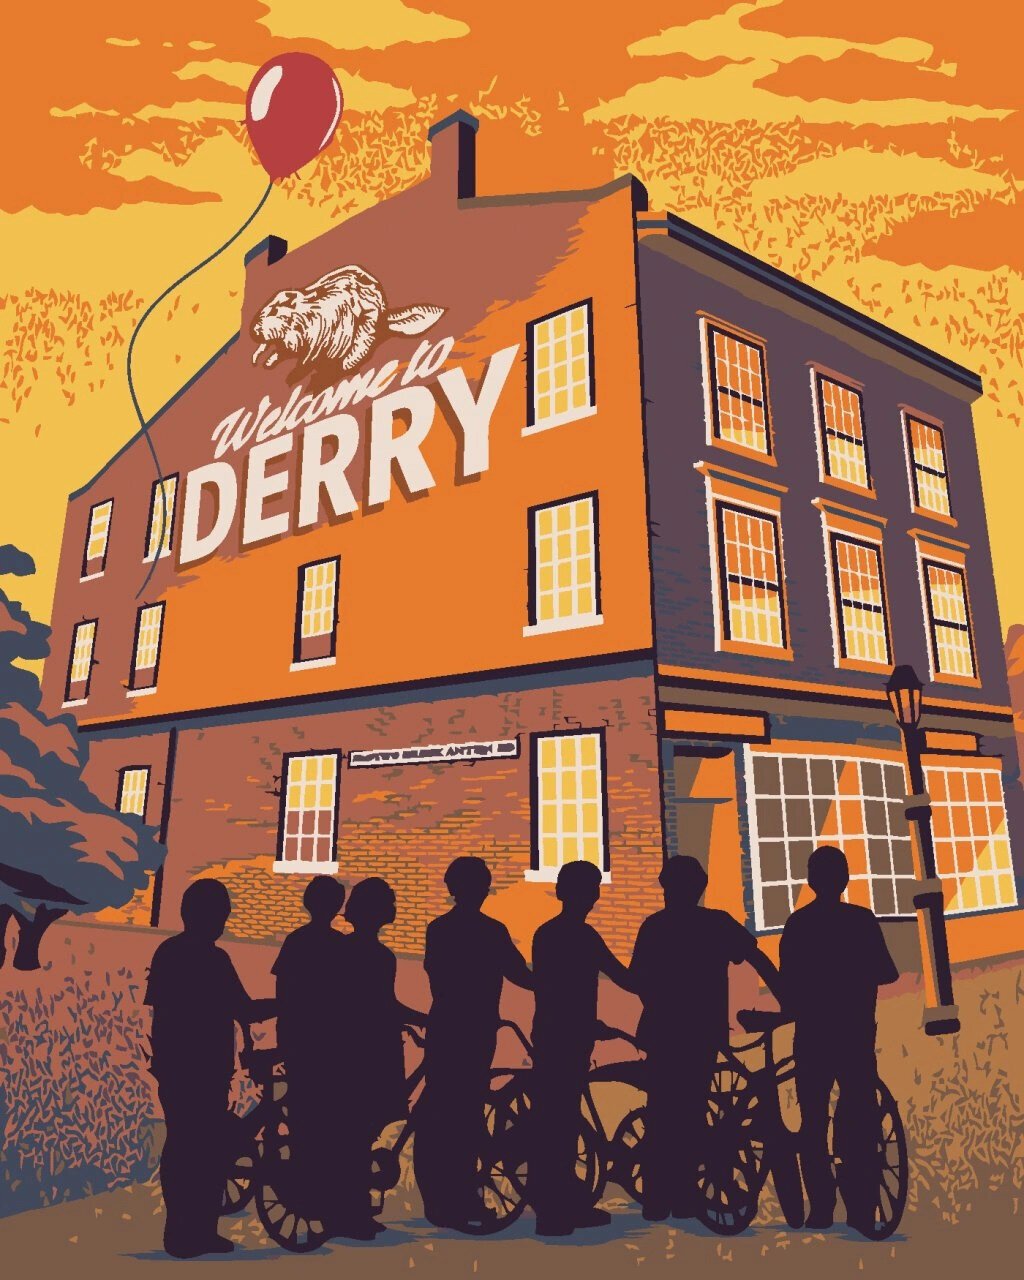 Festés számok szerint Zuty Festés számok szerint Üdvözöljük Derryben (It)